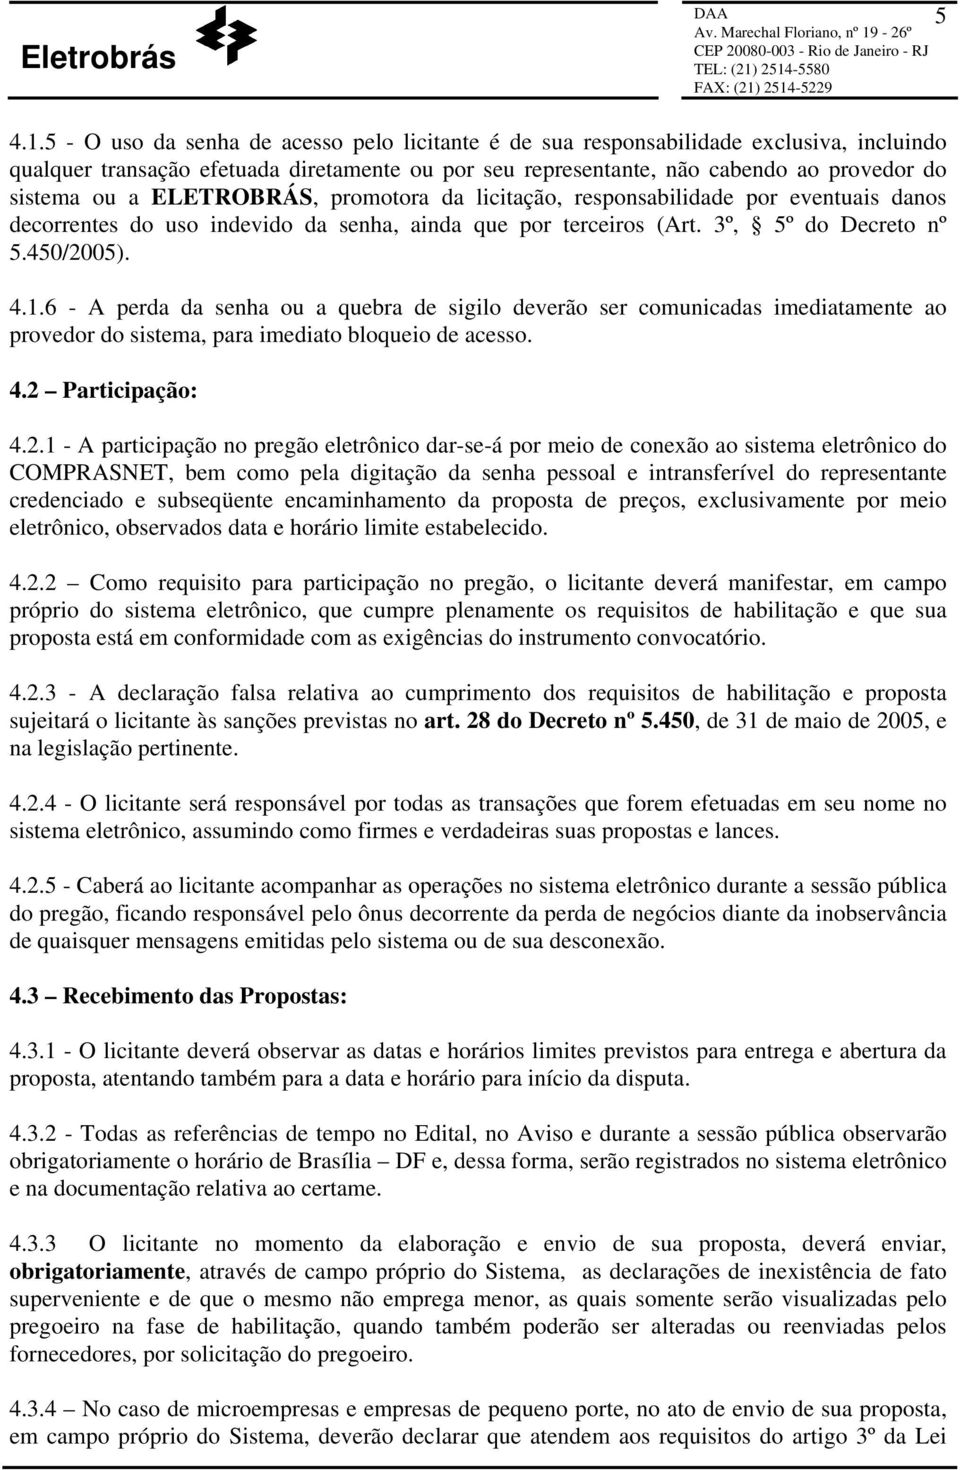 ELETROBRÁS, promotora da licitação, responsabilidade por eventuais danos decorrentes do uso indevido da senha, ainda que por terceiros (Art. 3º, 5º do Decreto nº 5.450/2005). 4.1.